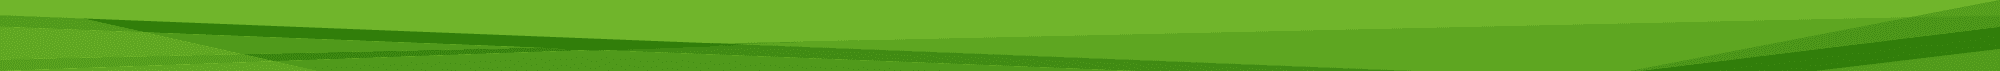 green banner bottom - Amenities